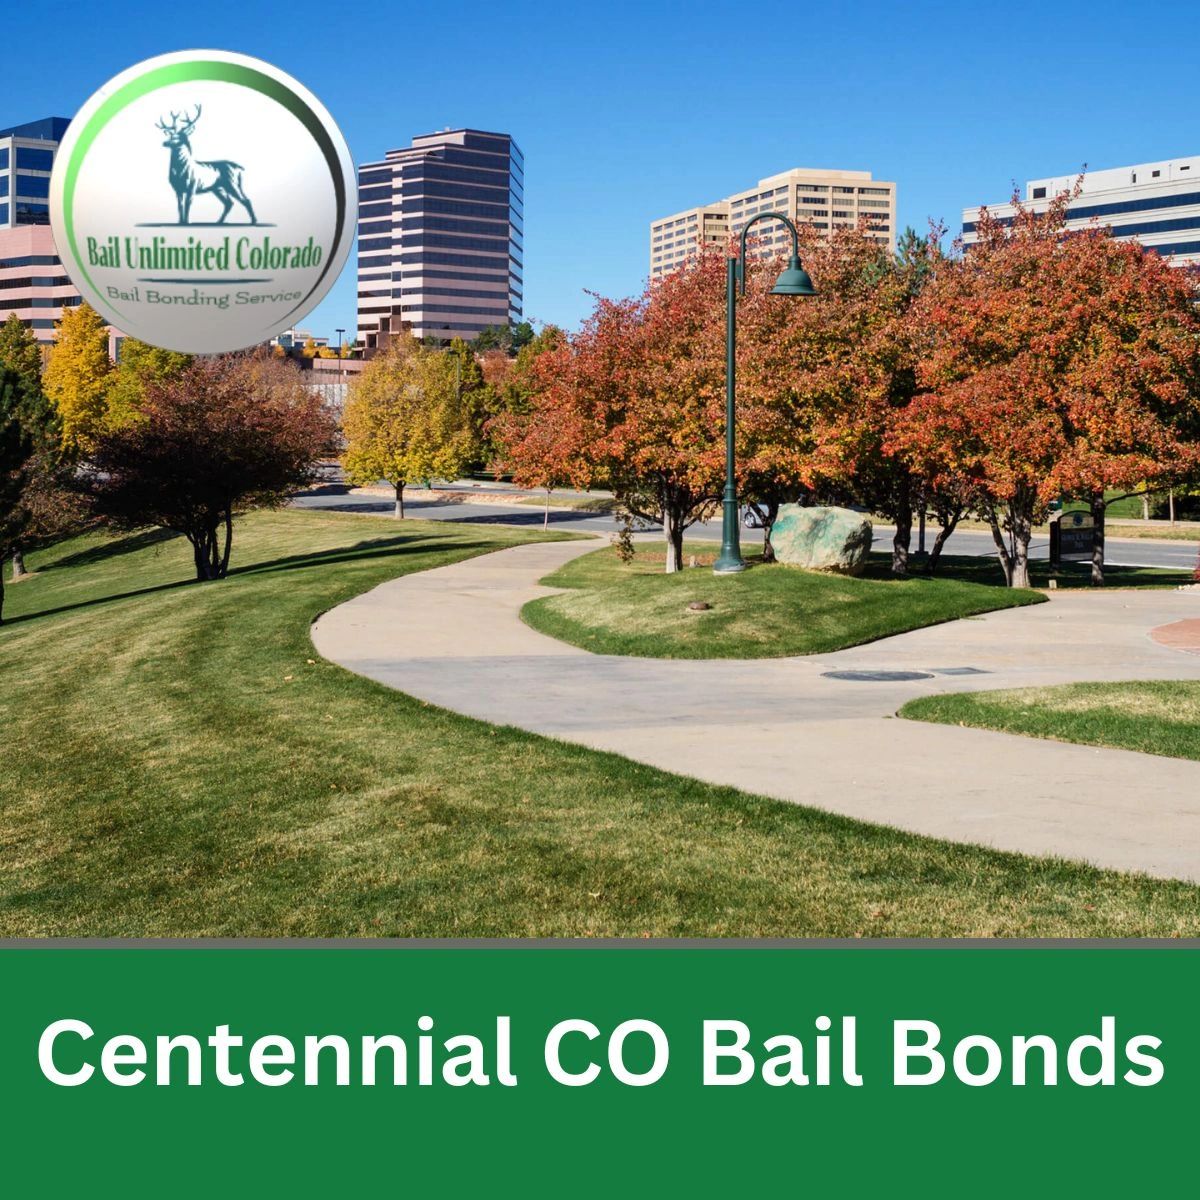 LOGO Bail Unlimited Colorado TEXT Centennial CO Bail Bonds IMAGE Centennial Colorado Arapahoe County